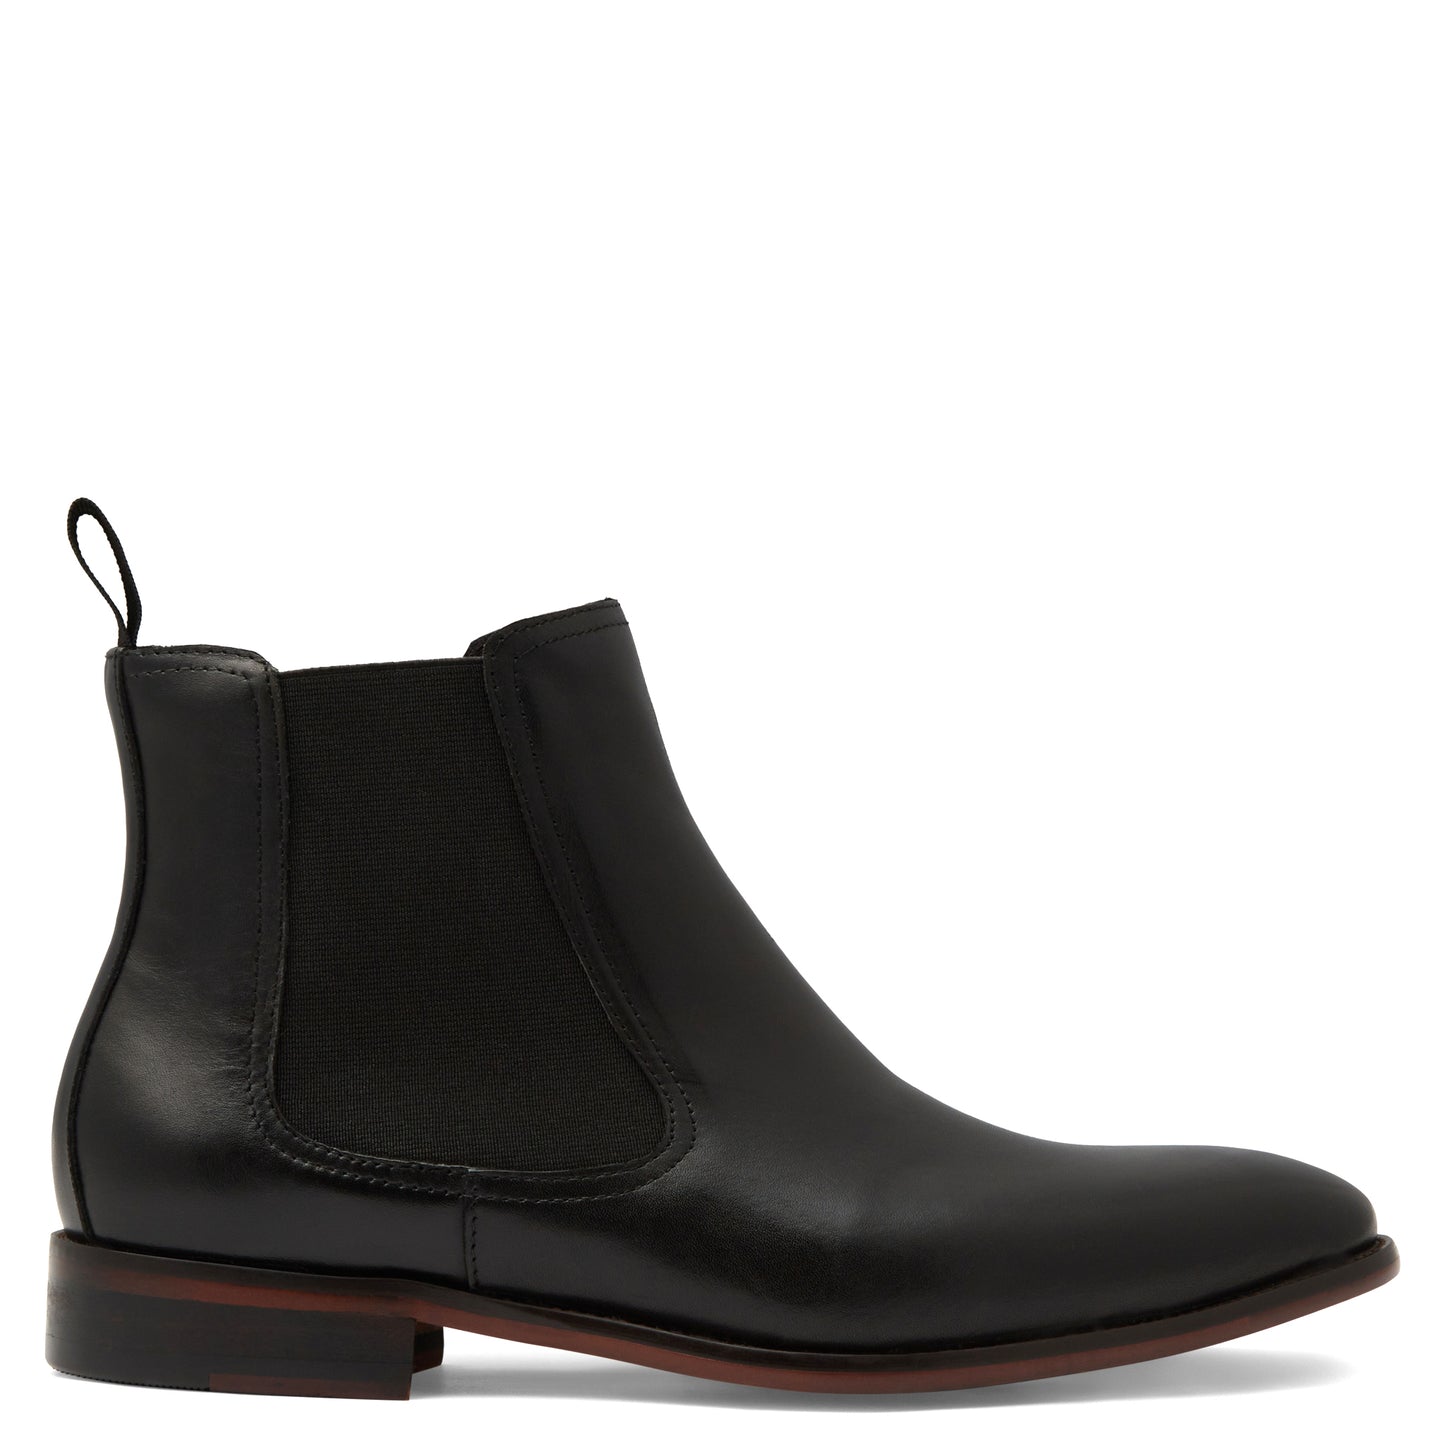 Men's Shoes - Batsanis Jason Black - Leather Chelsea Boots